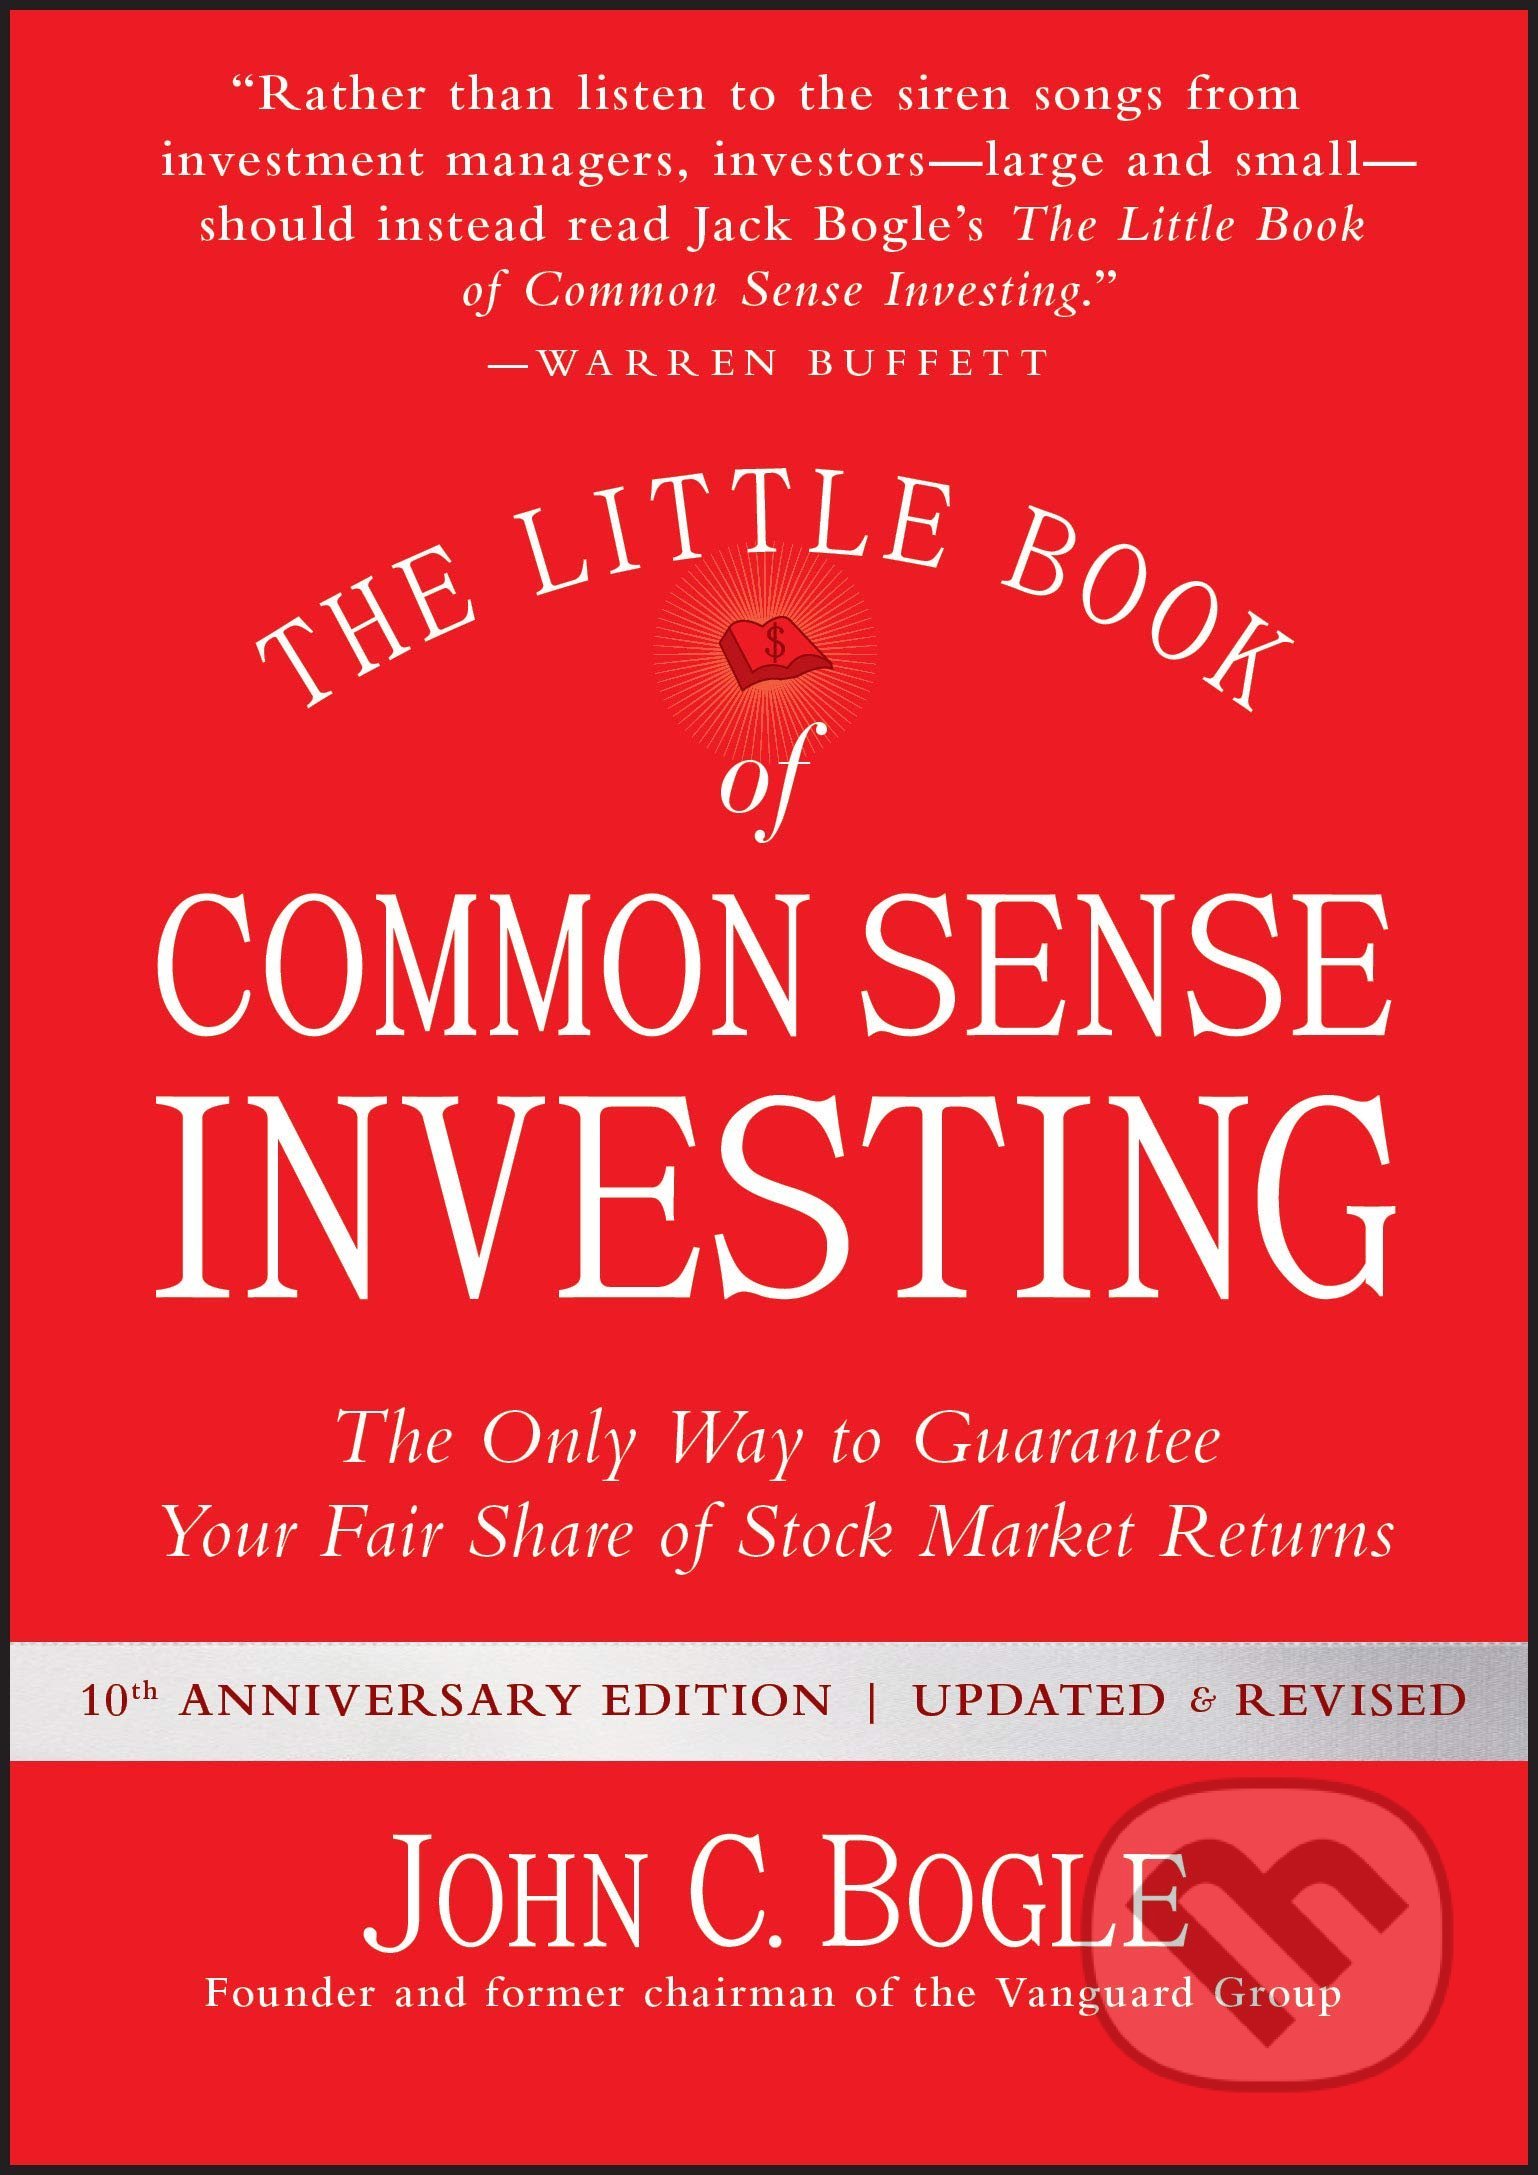 The Little Book of Common Sense Investing - John C. Bogle, John Wiley & Sons, 2017